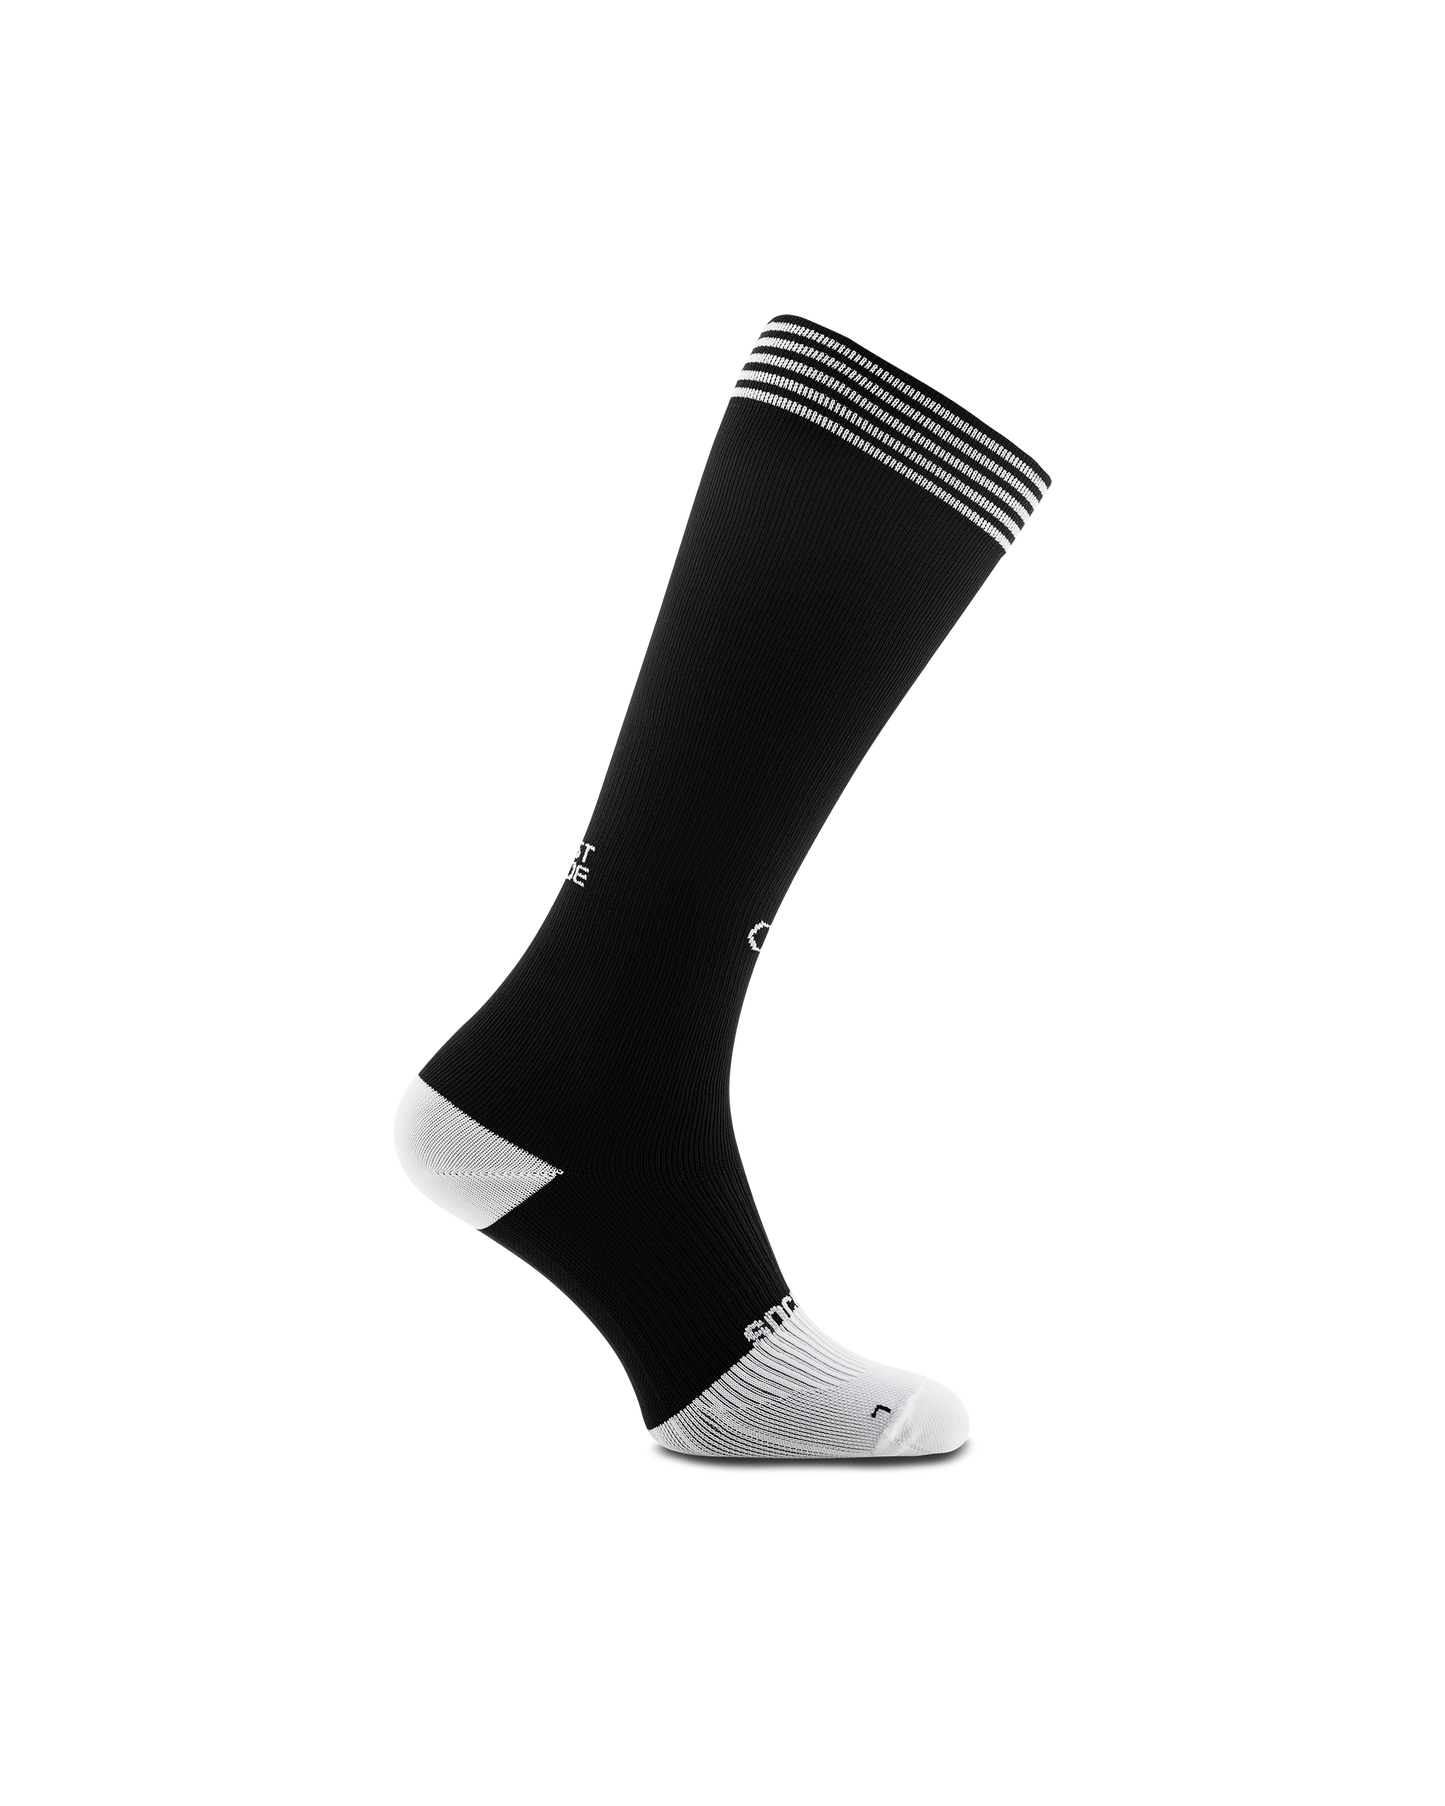 black-rest-mode-compression-socks-sockeloen